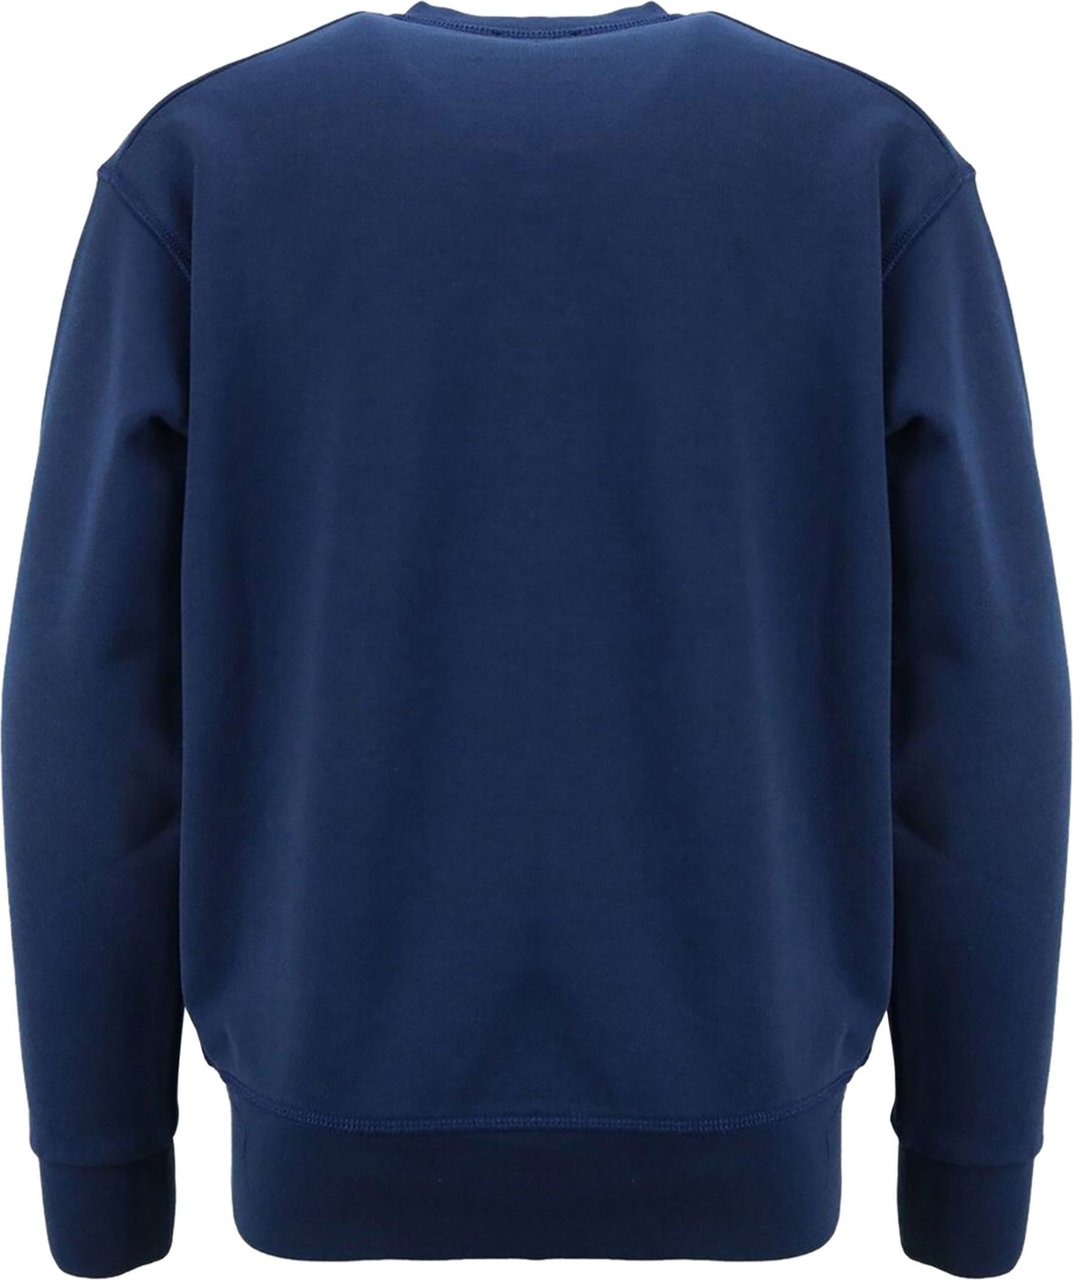 Dsquared2 sweater blauw dq0816 Blauw